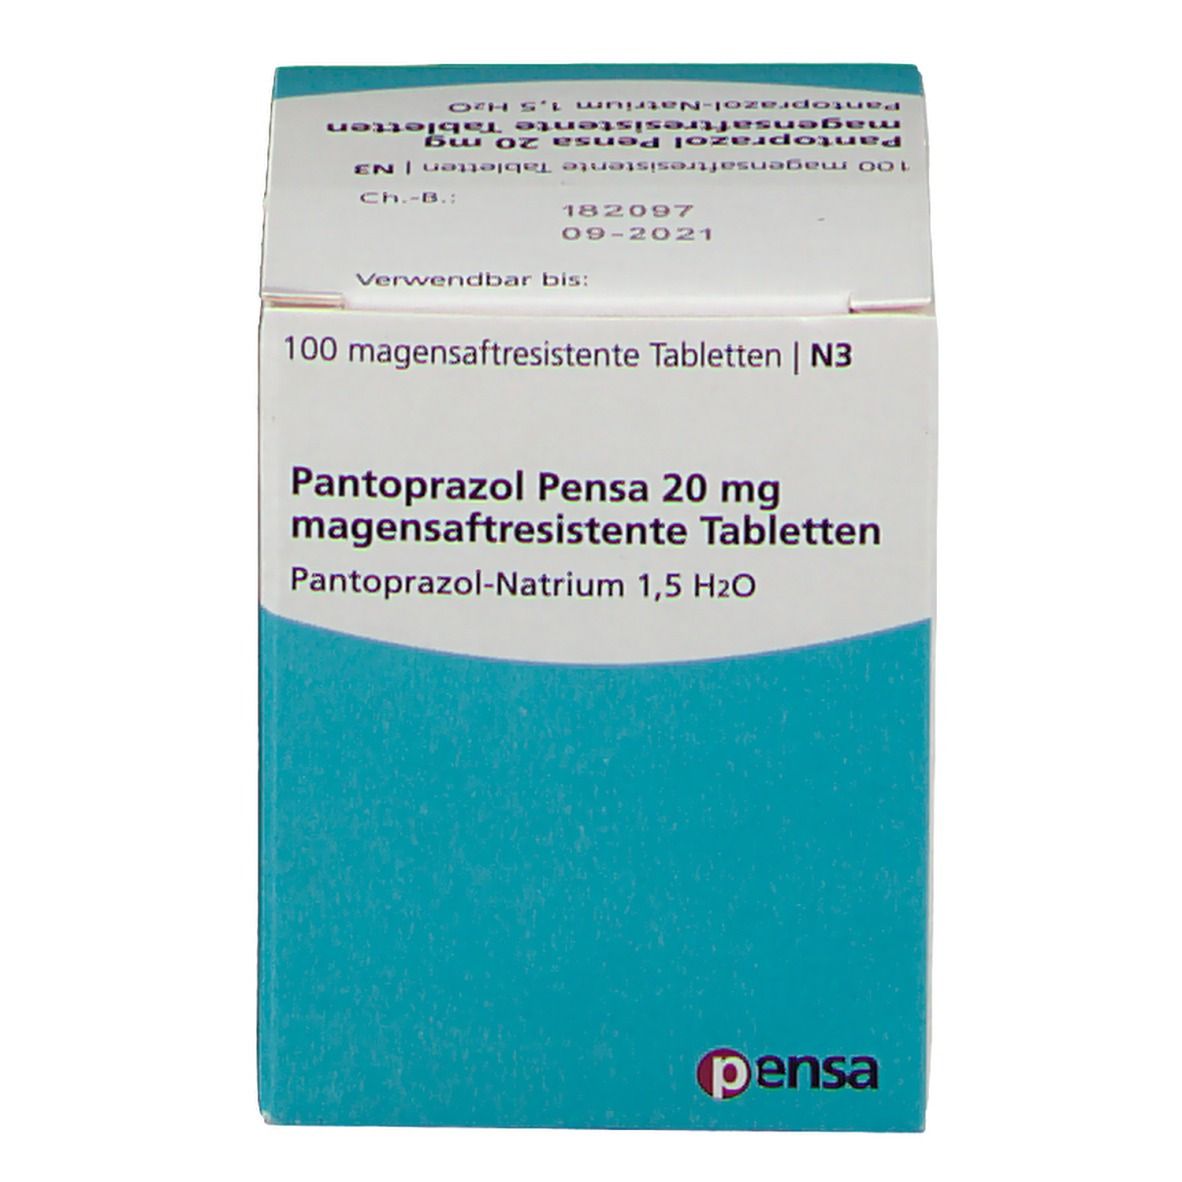 Pantoprazol Pensa 20 mg